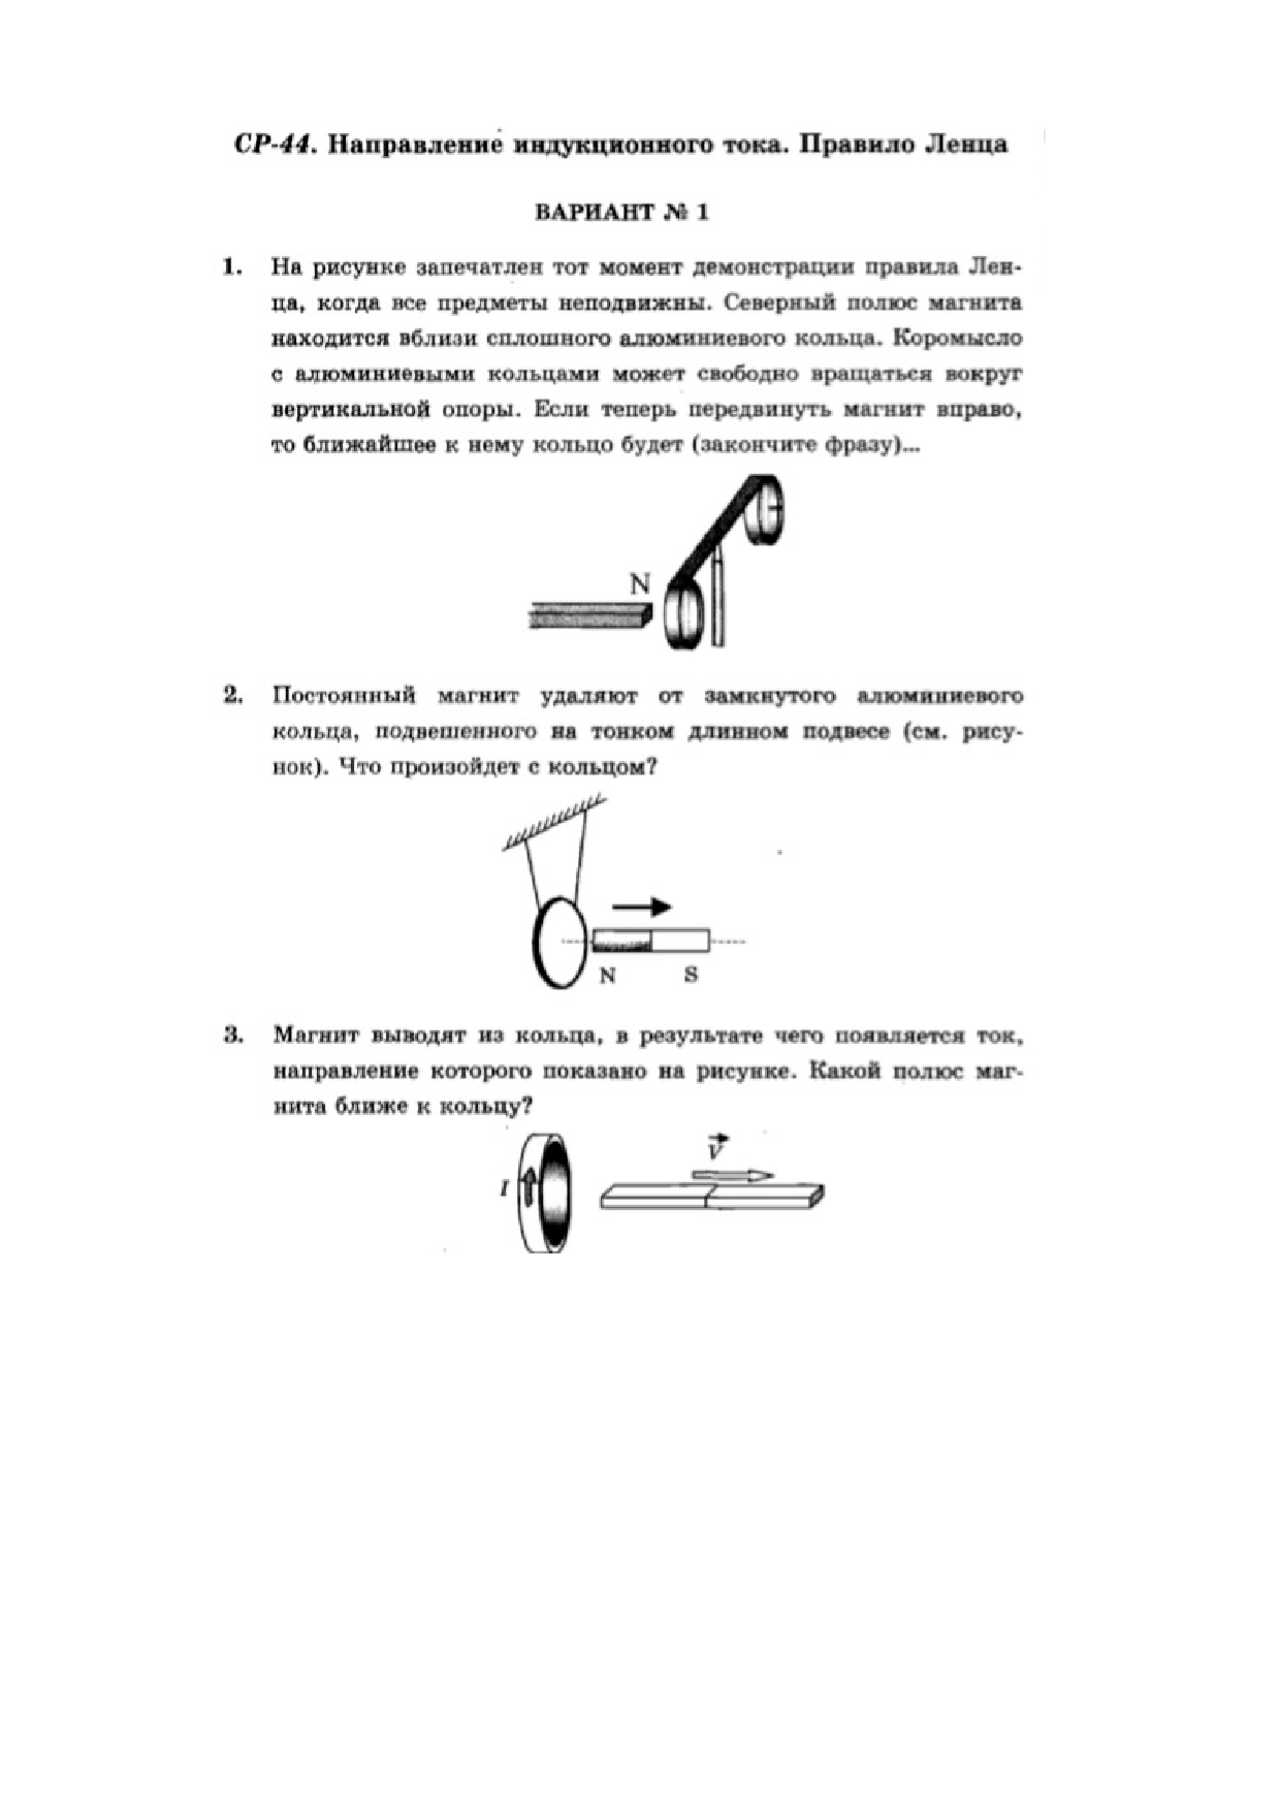 Направление индукционного тока правило ленца конспект 9